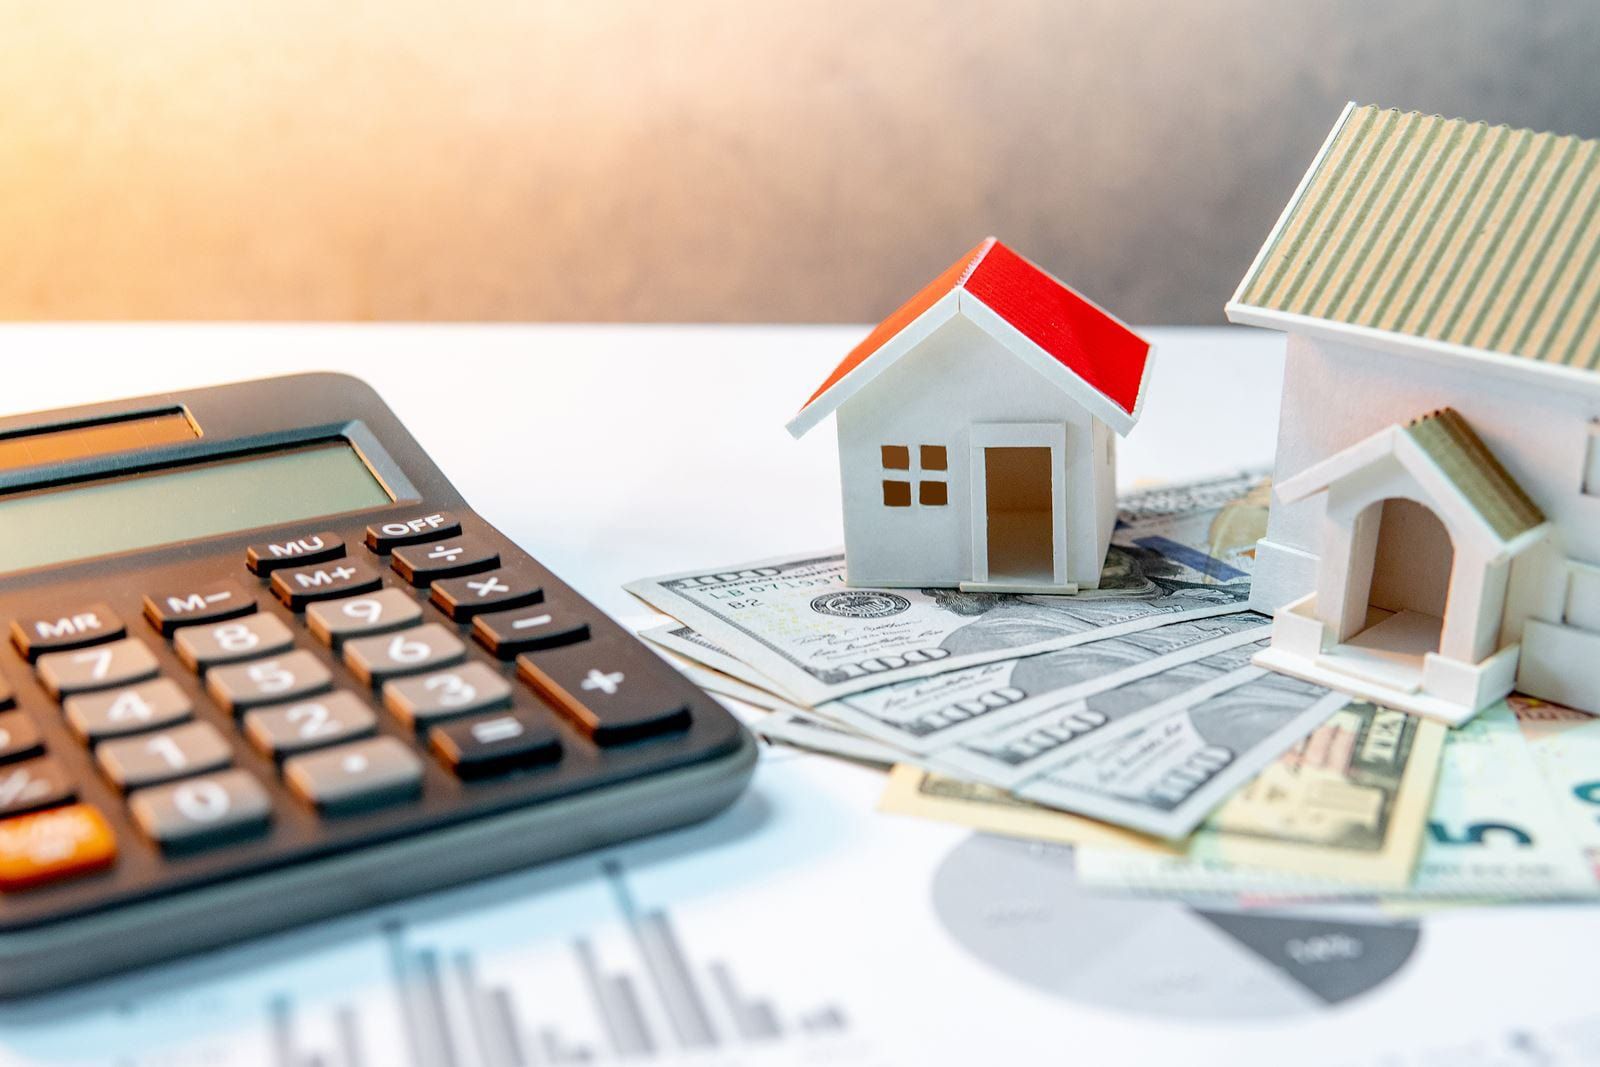 Chuyên gia: “Lãi suất cho vay mua nhà chưa bao giờ thấp và dễ vay như hiện nay”